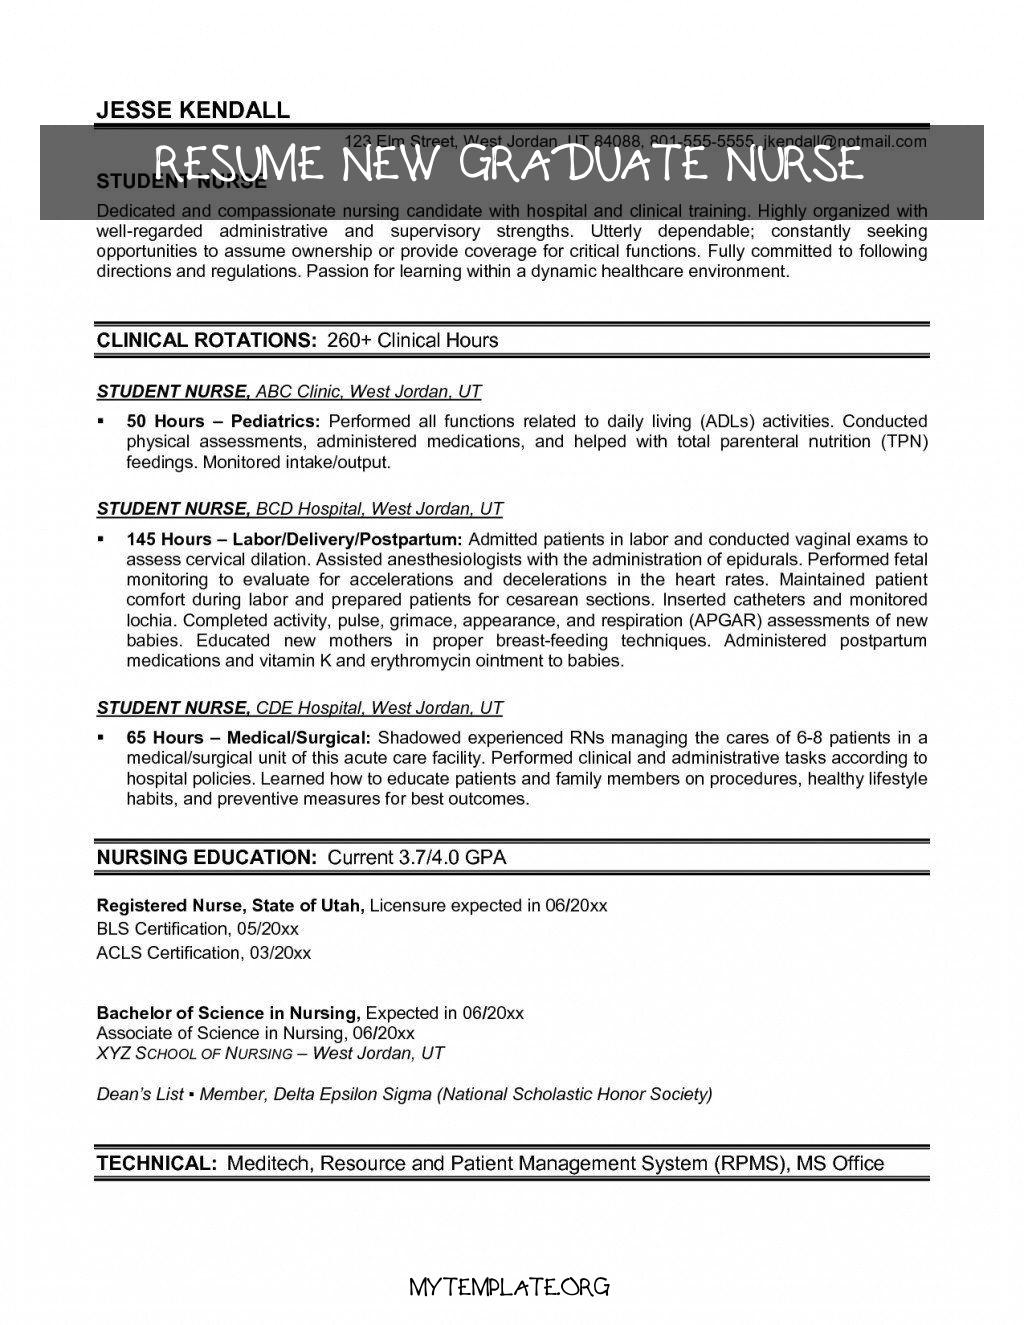 9 Resume New Graduate Nurse for September 2021